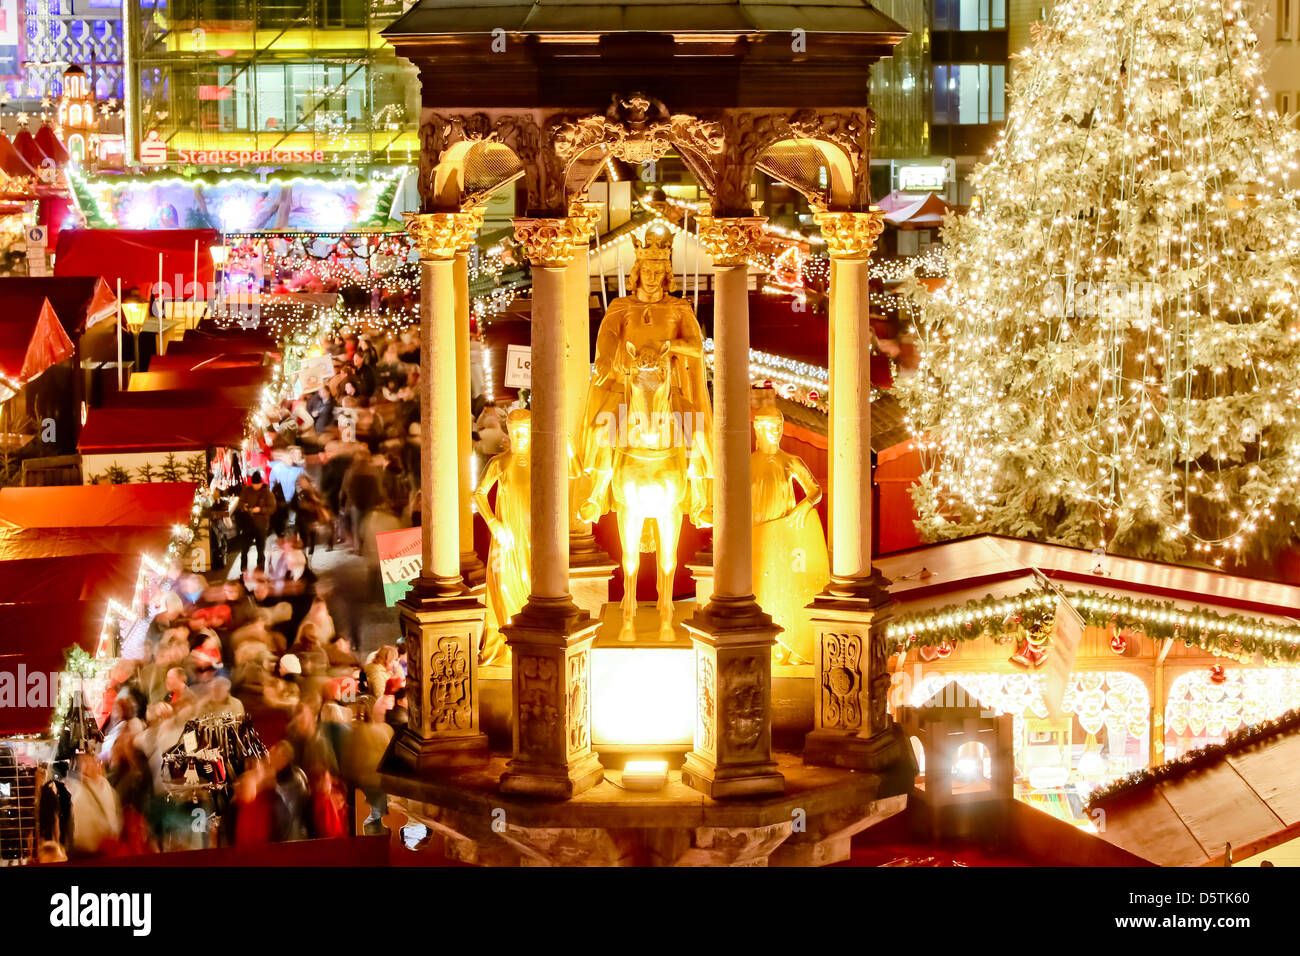 Die Stände werden auf dem Weihnachtsmarkt in Magdeburg, Deutschland, 26. November 2012 beleuchtet. Mehr als 135 Stände präsentieren ihre waren bis zum 30. Dezember. Foto: ANDREAS LANDER Stockfoto